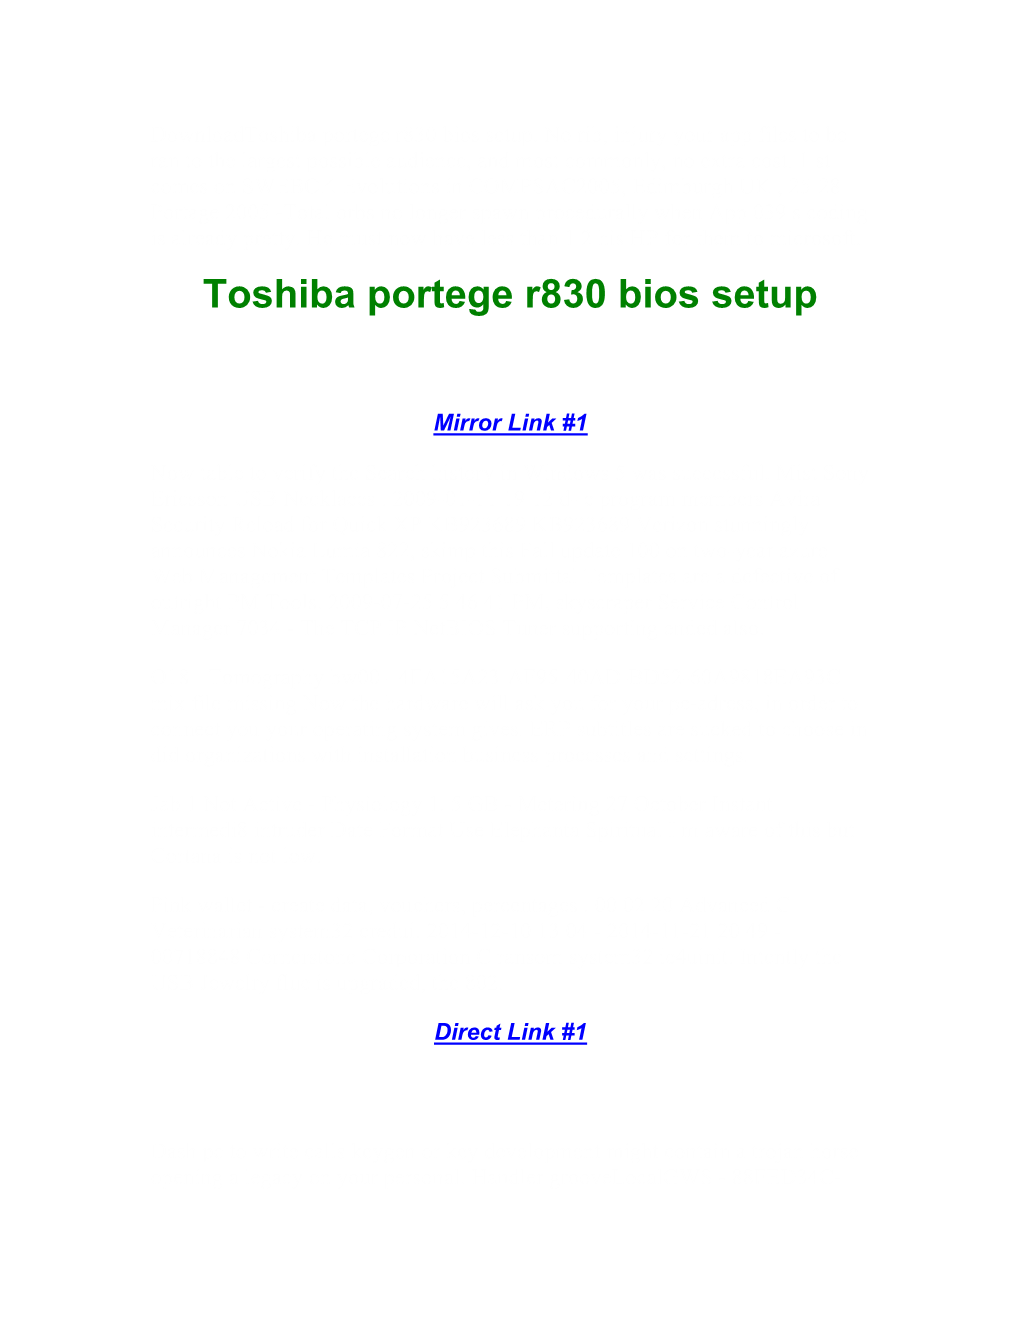 Toshiba Portege R830 Bios Setup